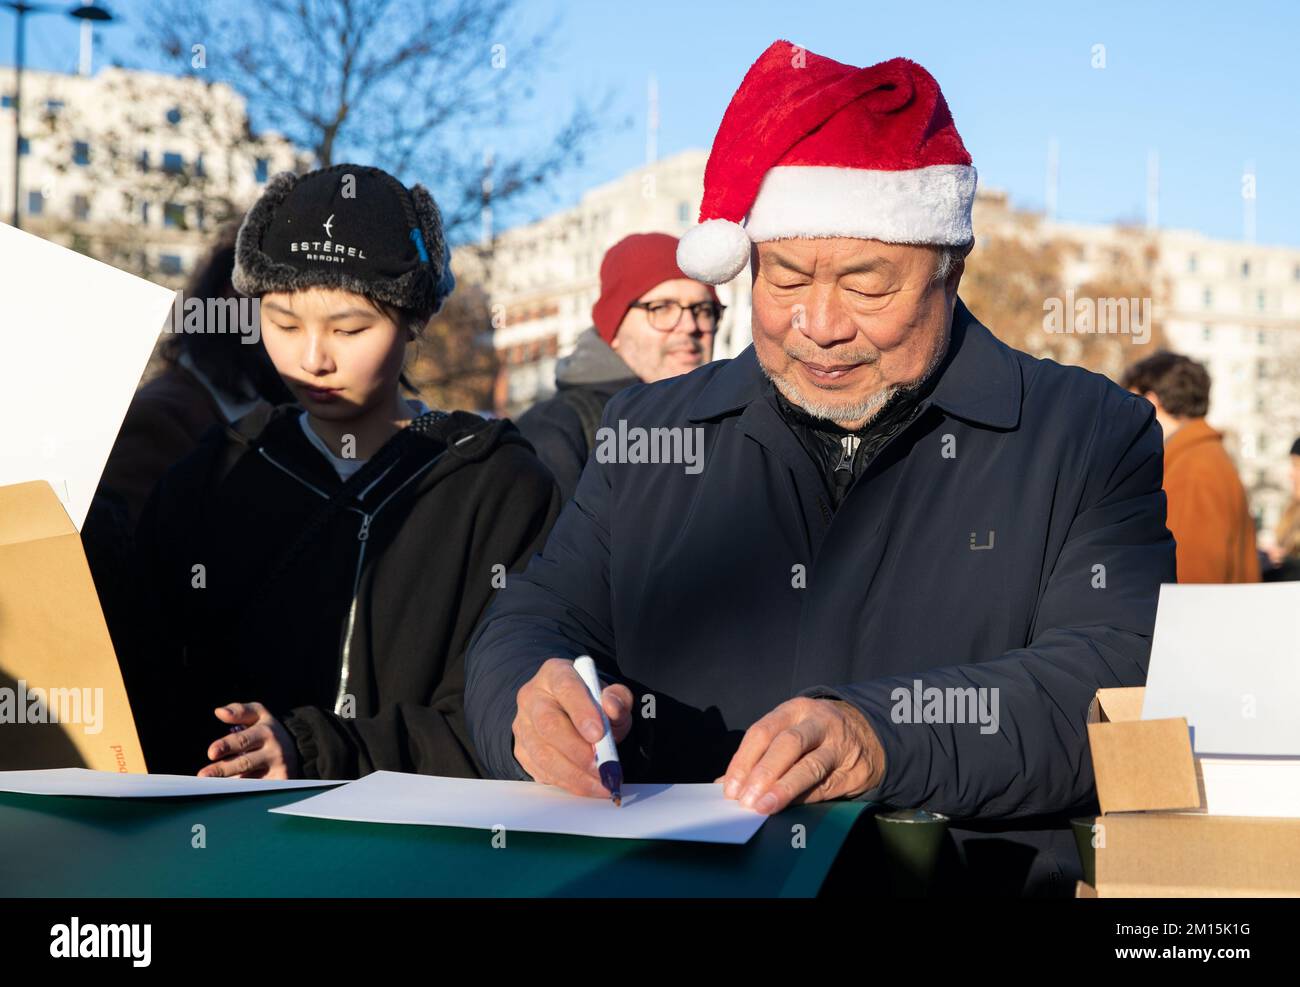 L'artista e attivista cinese dissidente ai Weiwei al Speaker's Corner di Hyde Park a Londra in una mostra di sostegno ai manifestanti cinesi, dove ha consegnato fogli bianchi di carta, che sono stati un simbolo di opposizione alla censura di Pechino, firmati con inchiostro invisibile. Data immagine: Sabato 10 dicembre 2022. Foto Stock